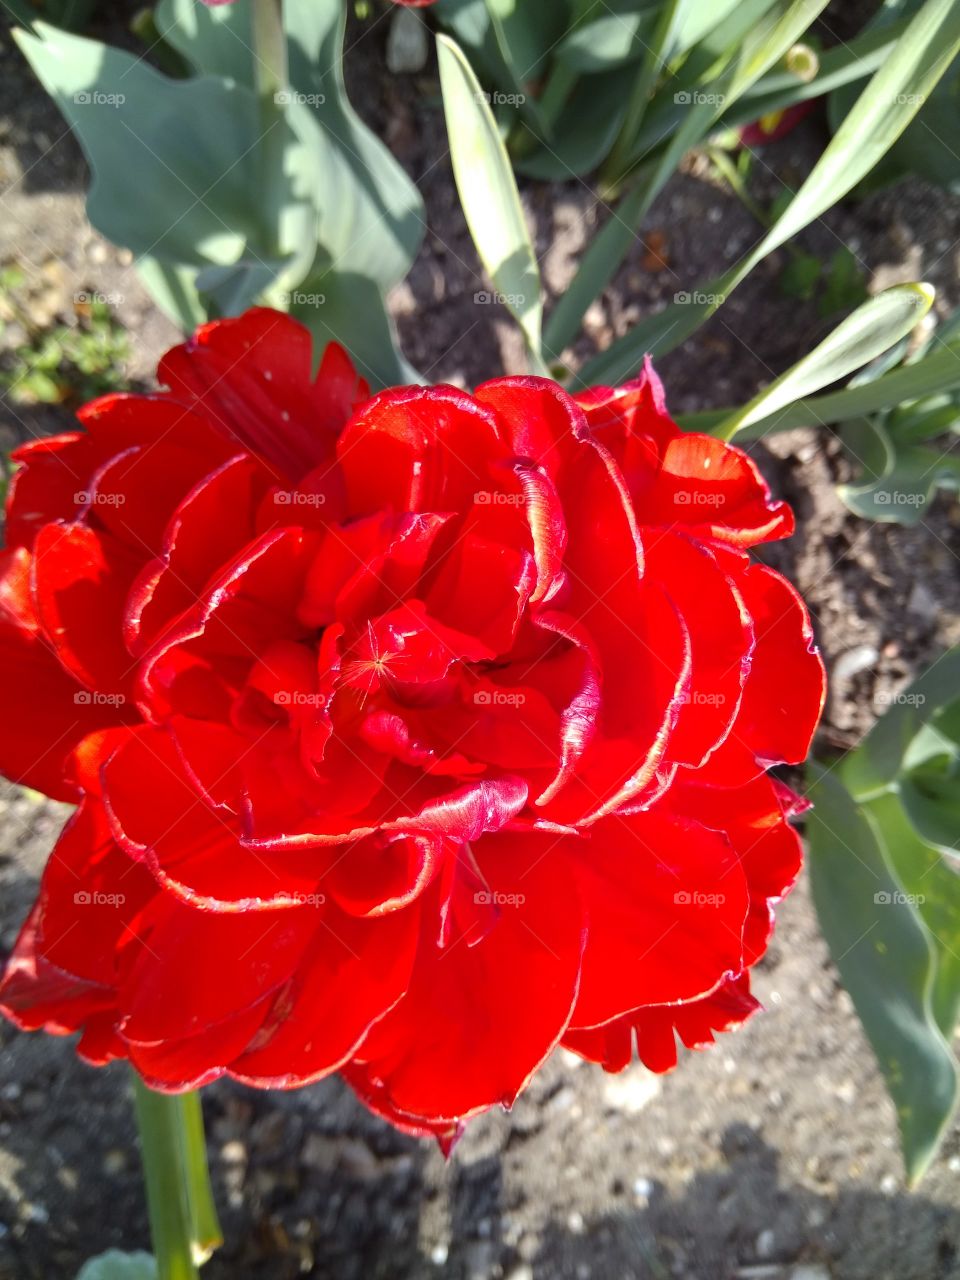 Красный тюльпан похожий на розу, или на пион...
Red tulip similar to a rose, or peony...